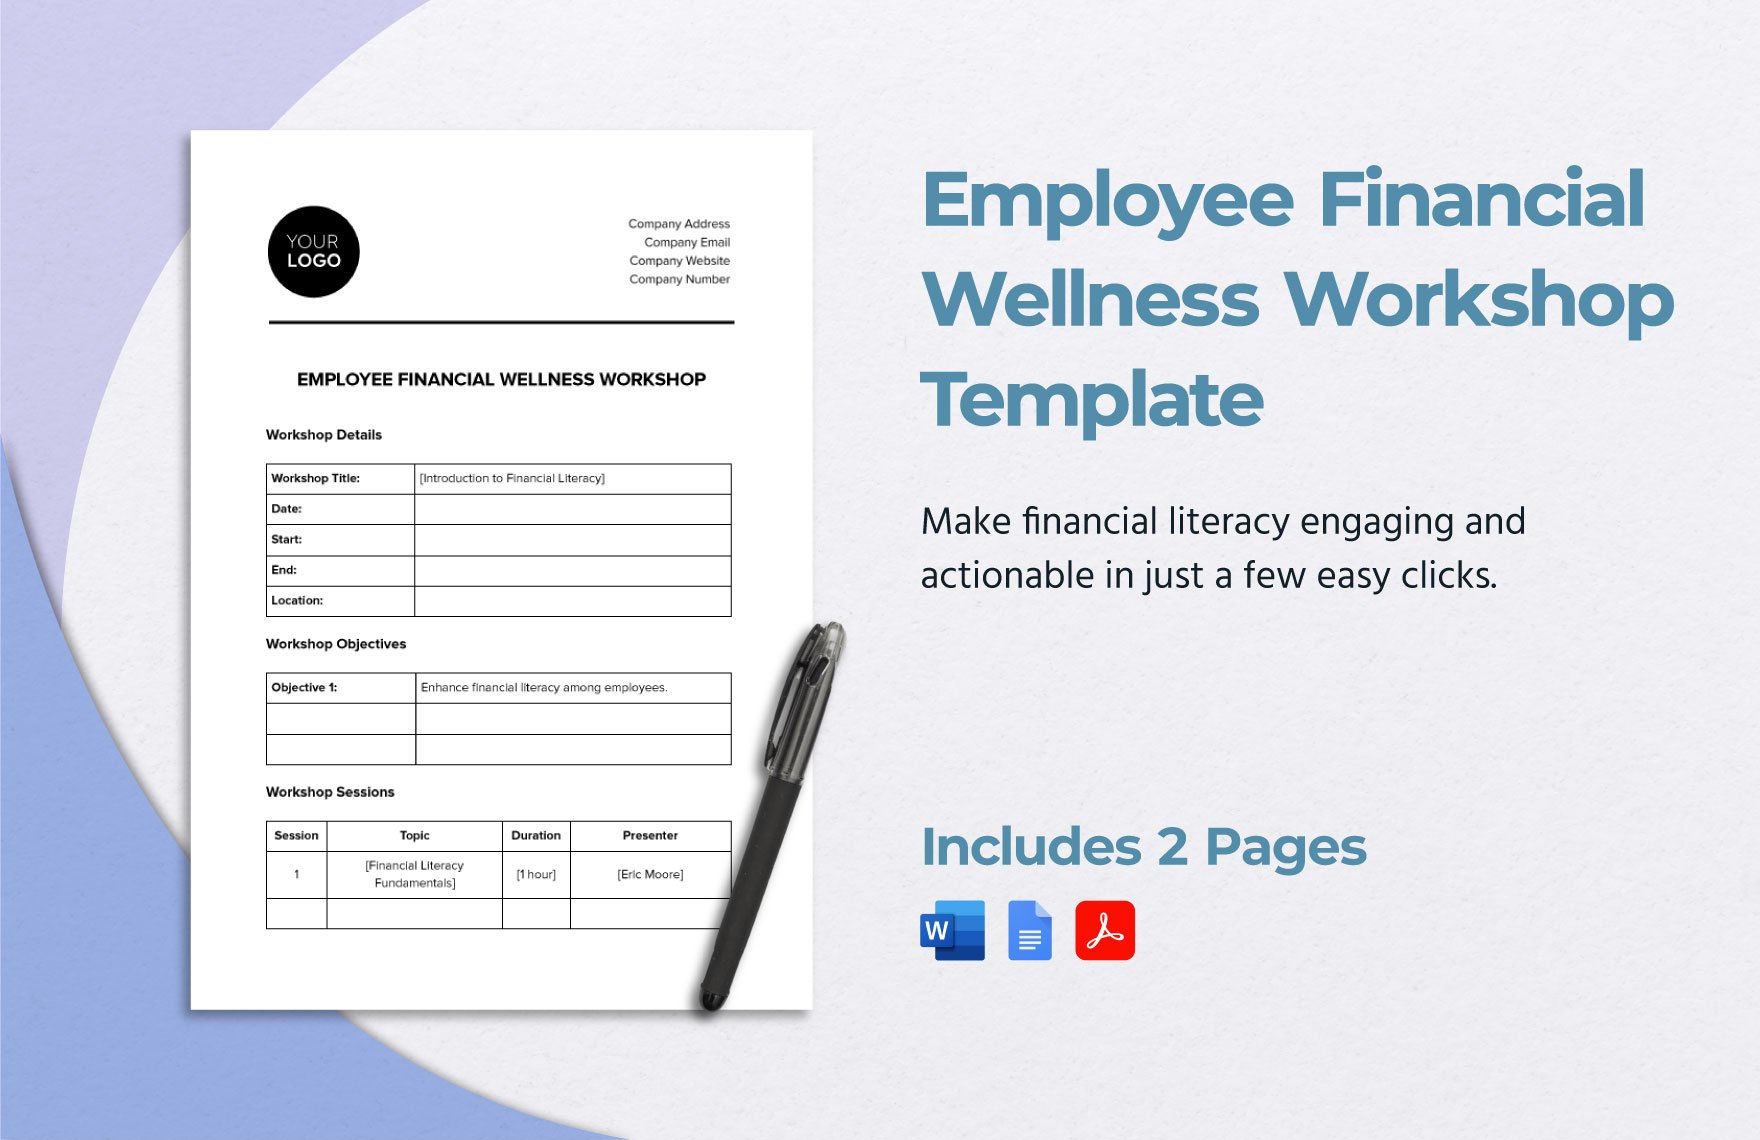 Employee Financial Wellness Workshop Template